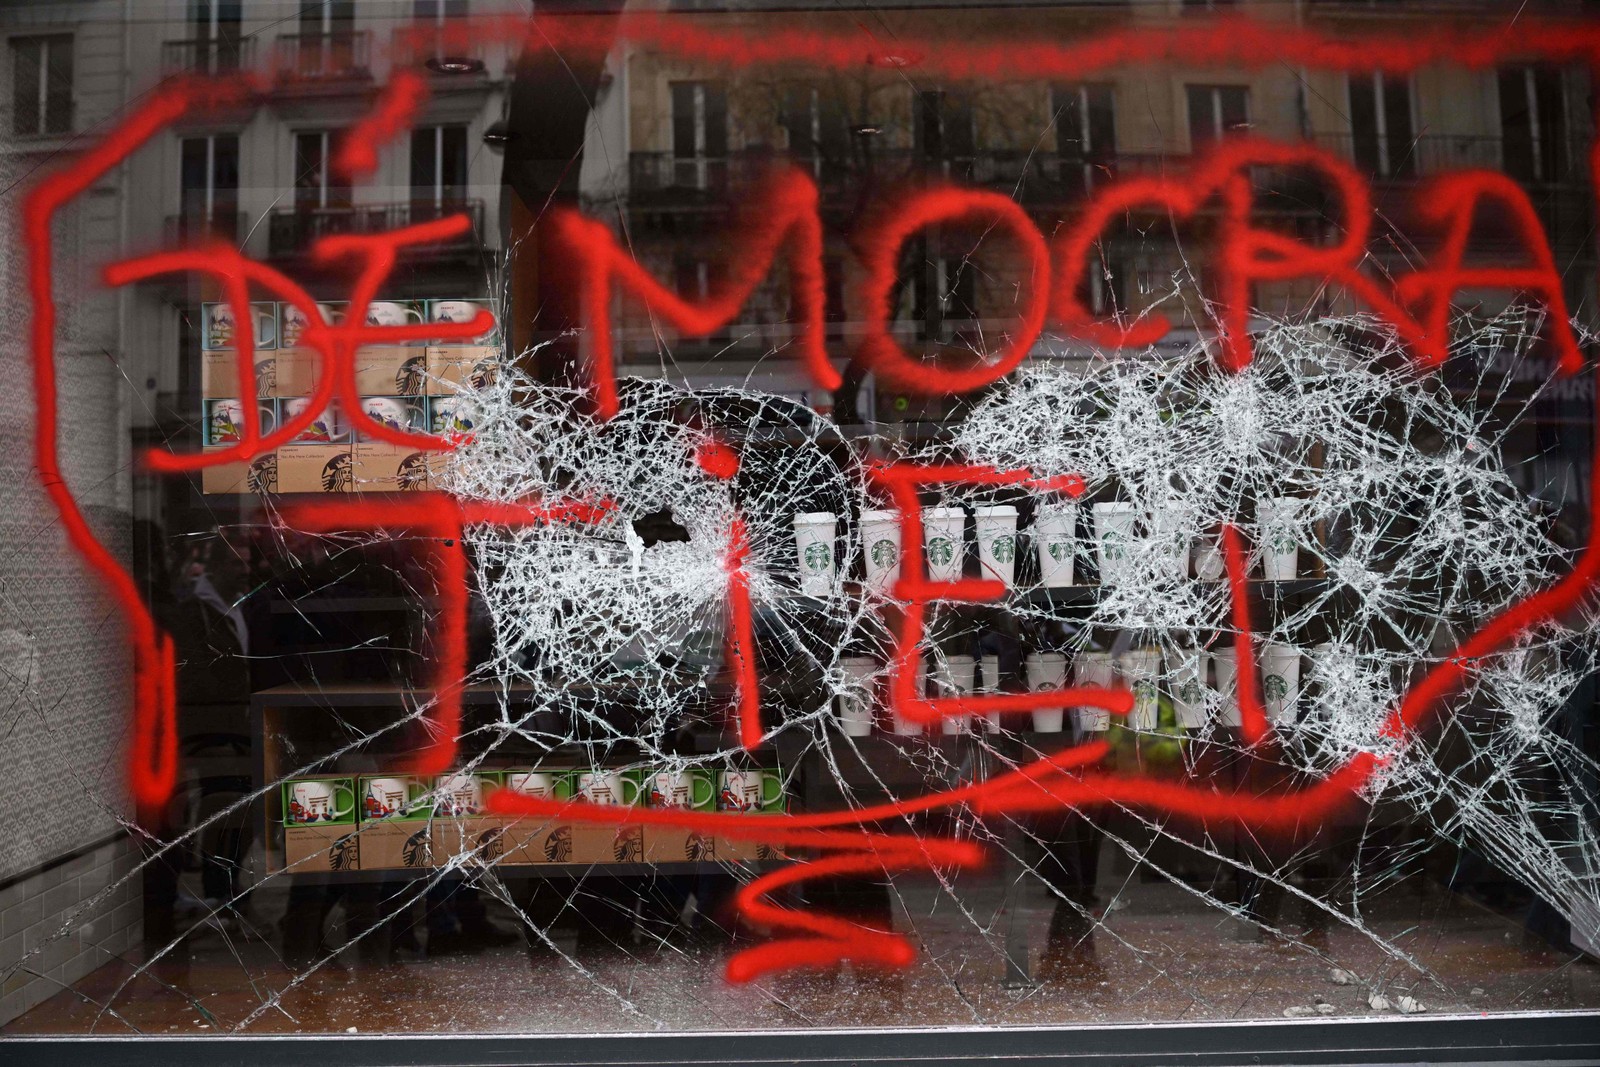 Vitrine de uma loja em Paris foi pichada com a palavra "Democracia" — Foto: Emmanuel Dunand/AFP